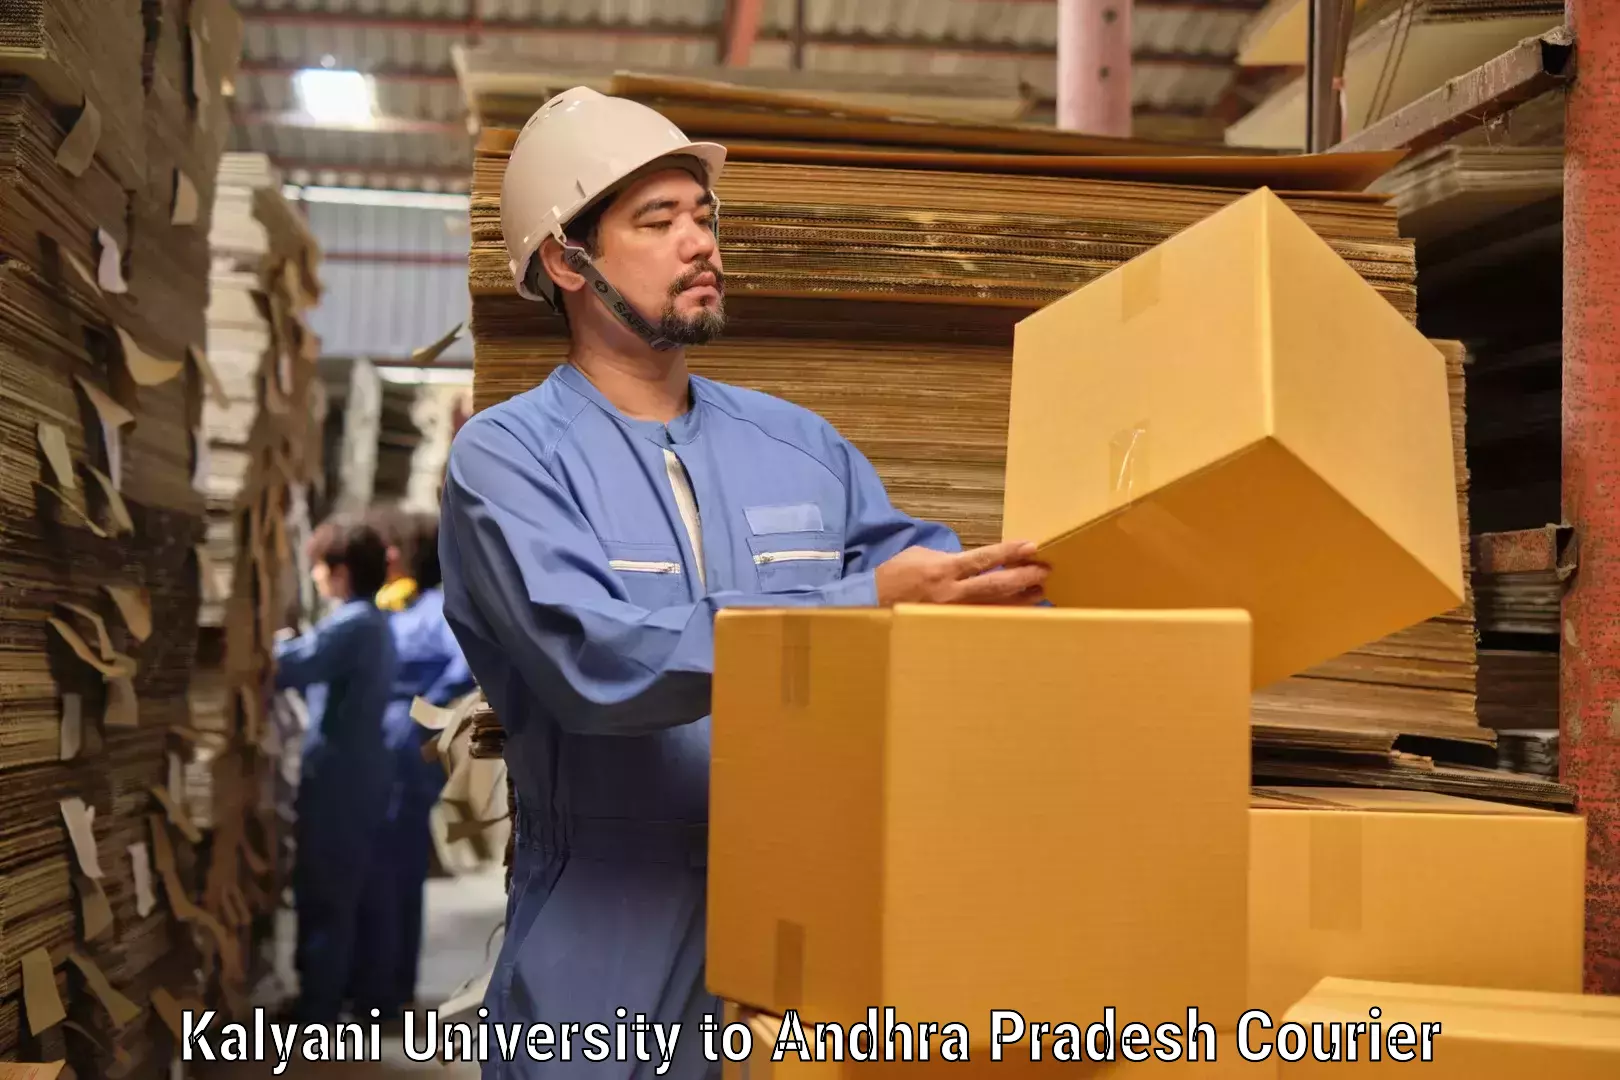 Business shipping needs in Kalyani University to Andhra Pradesh